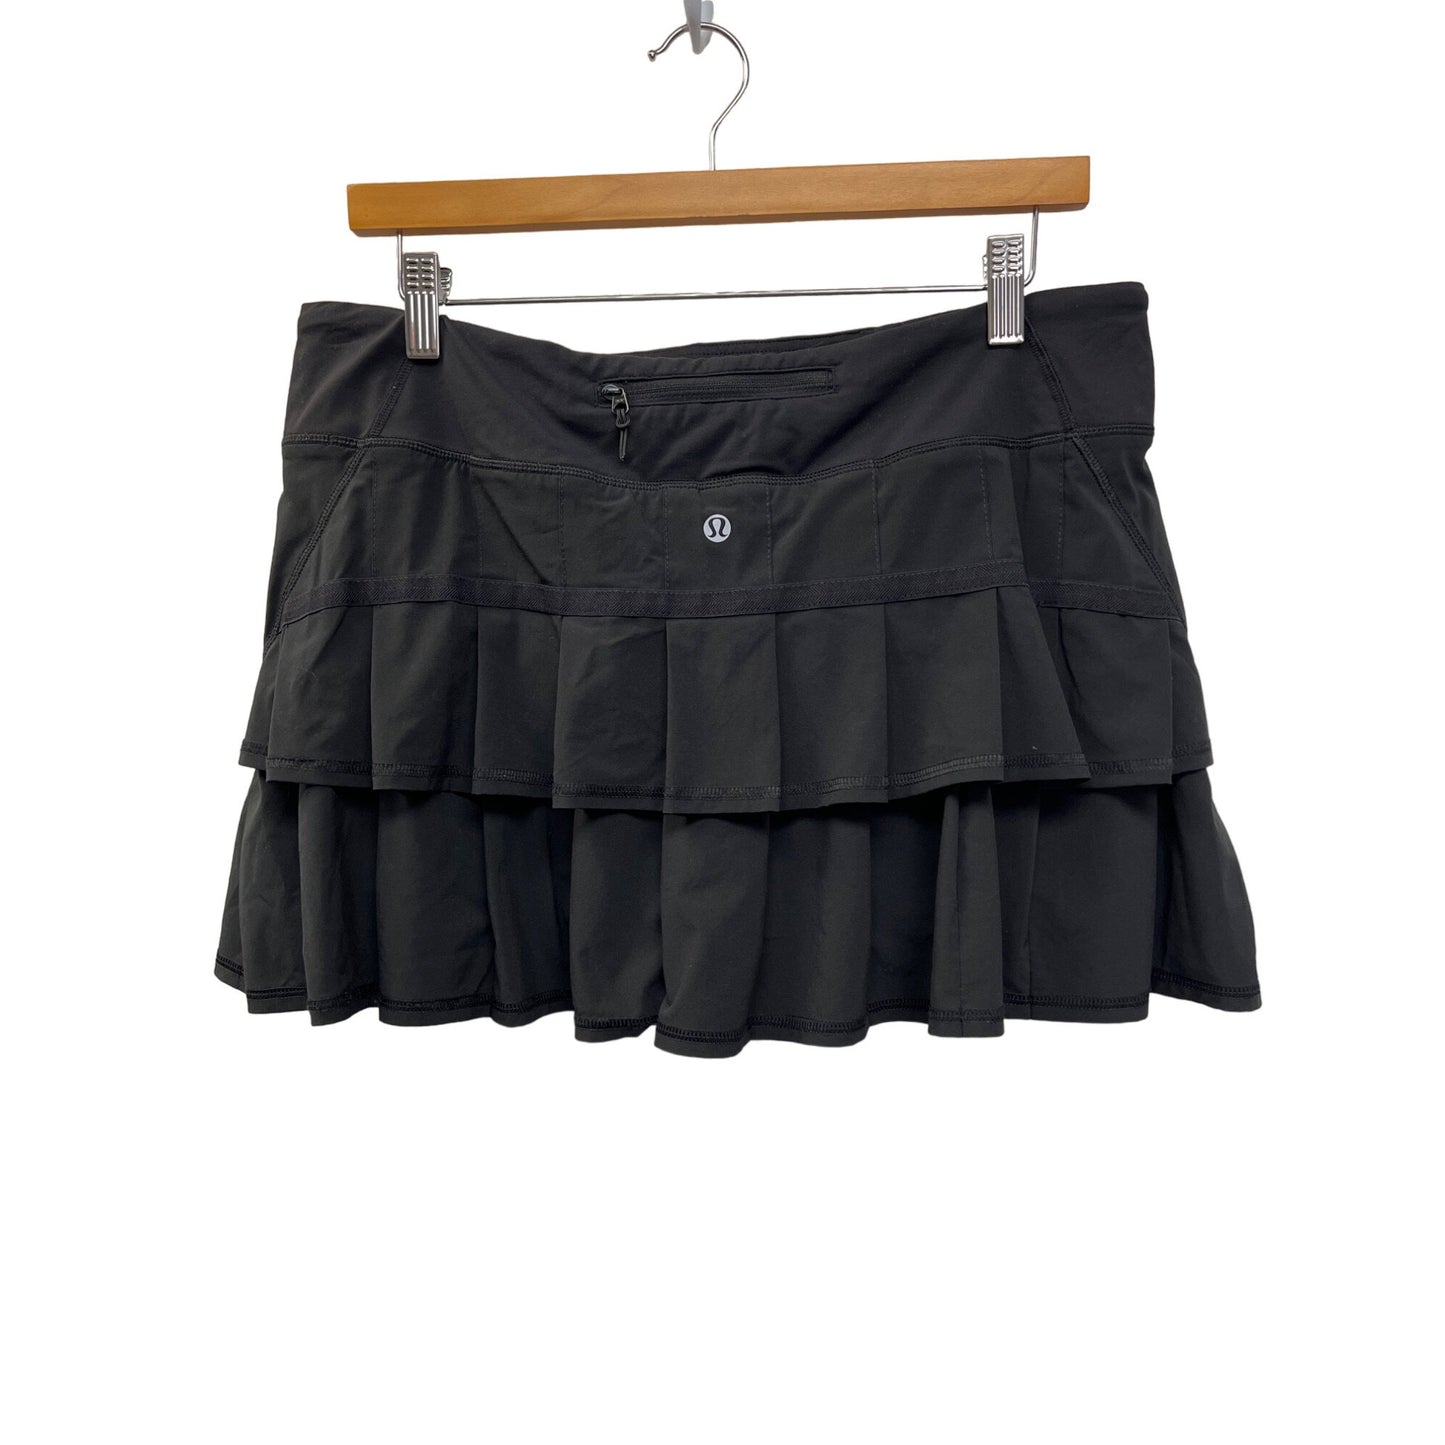 Lululemon Pace Setter Tennis Skirt in Black